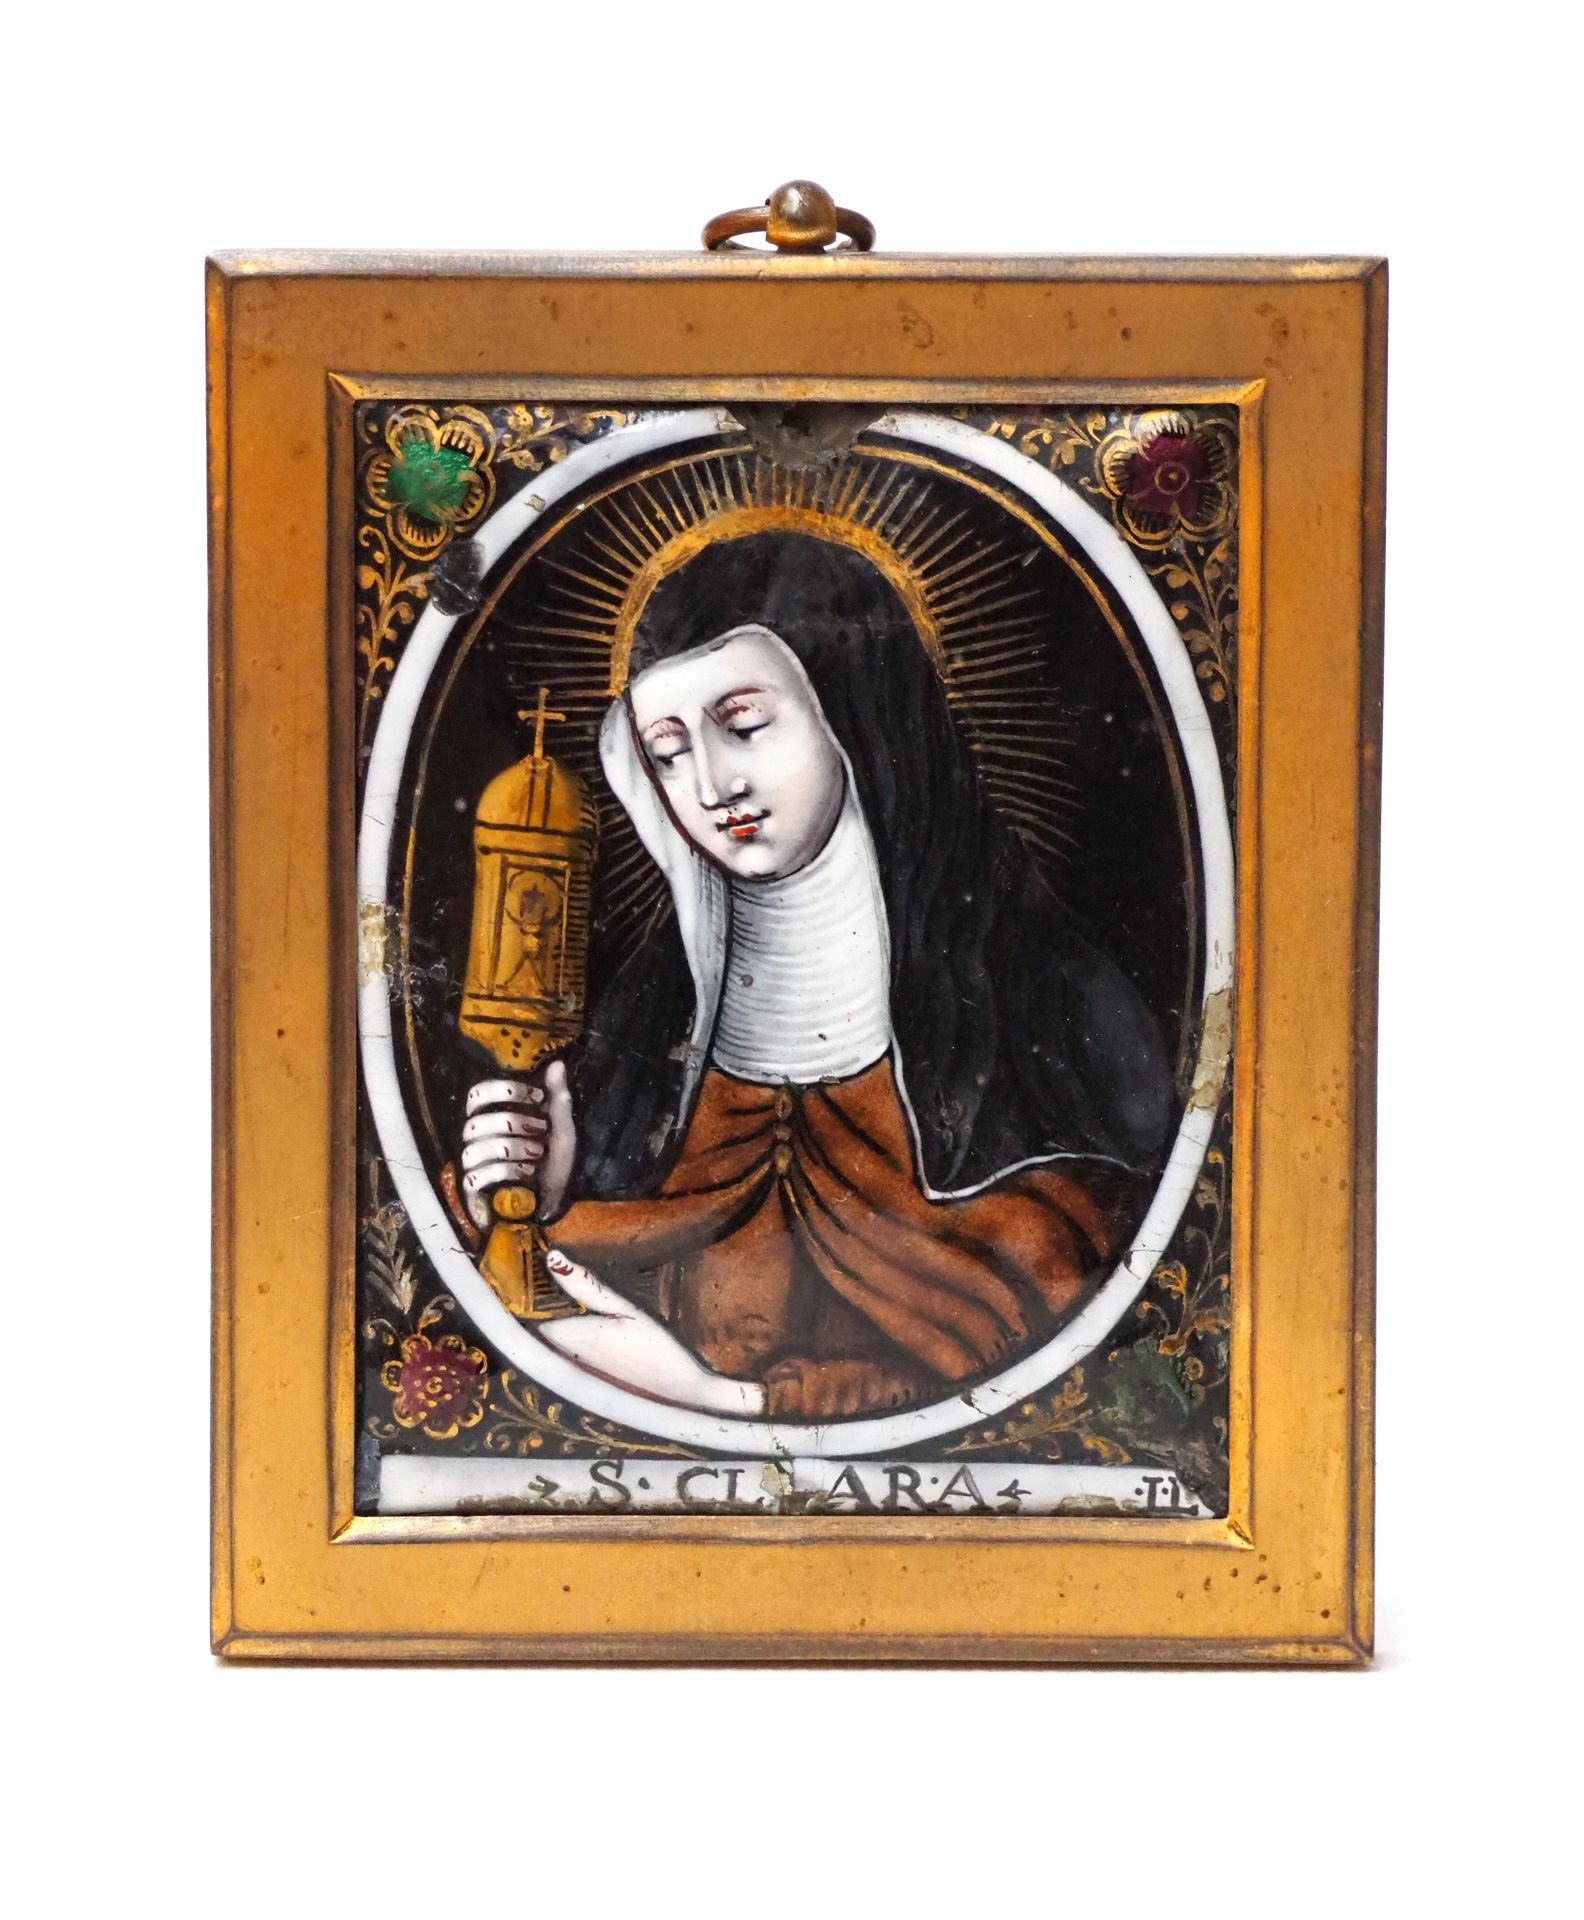 Null 利摩日 17 世纪晚期至 18 世纪早期 - 雅克二世-洛丹（约 1663-1729 年）
圣克拉拉
长方形珐琅盘，铜质，略有圆顶，带有多色彩绘装饰，&hellip;